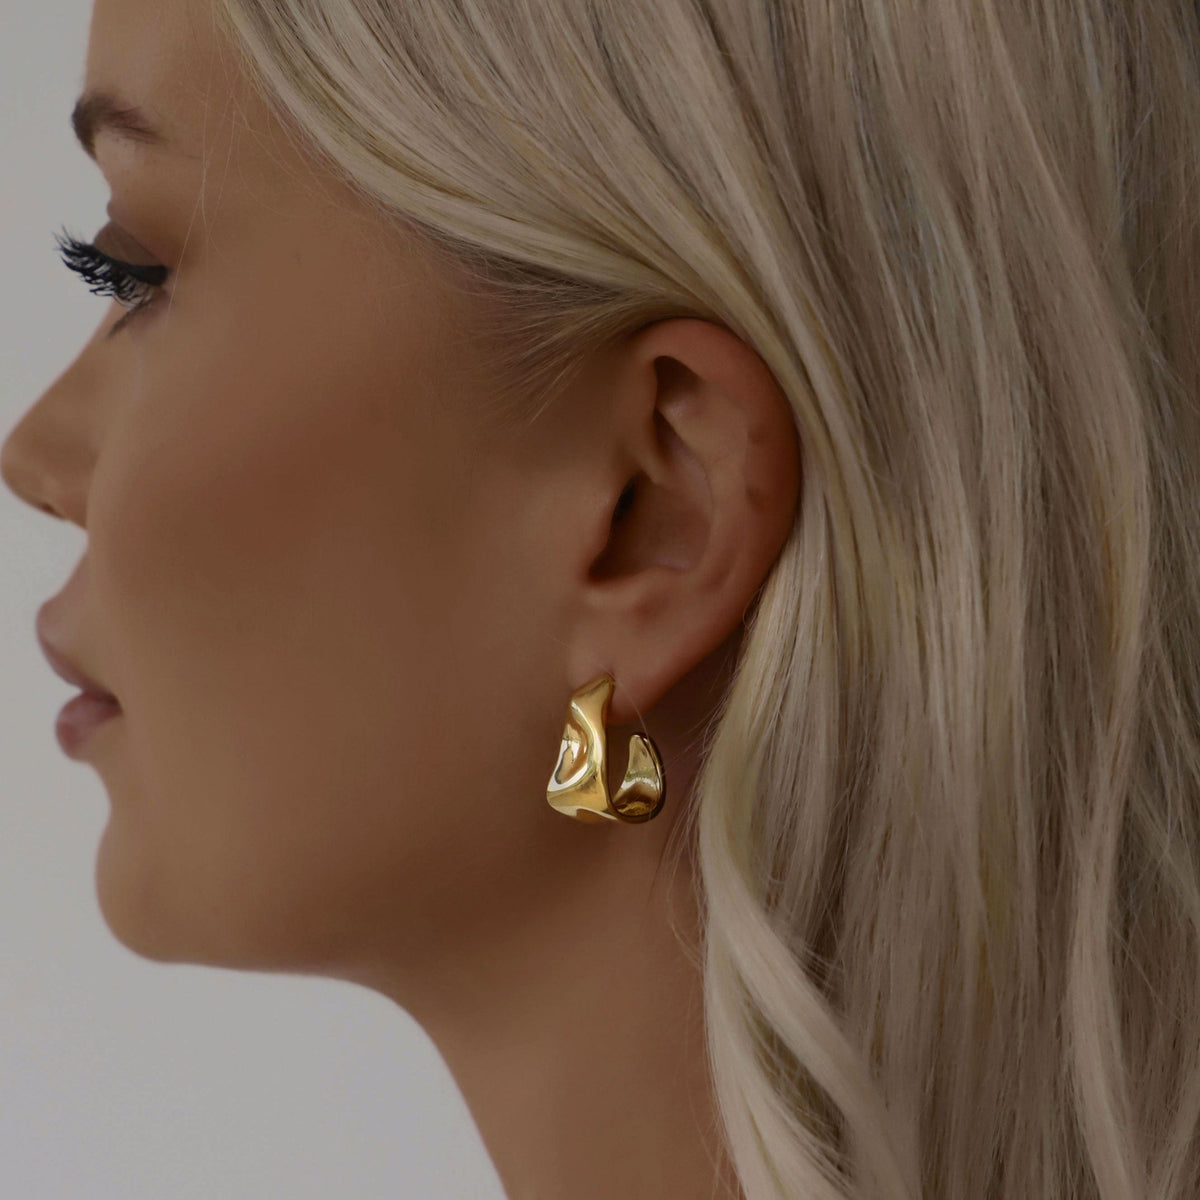 BOHOMOON Stainless Steel Tamara Hoop Earrings Gold